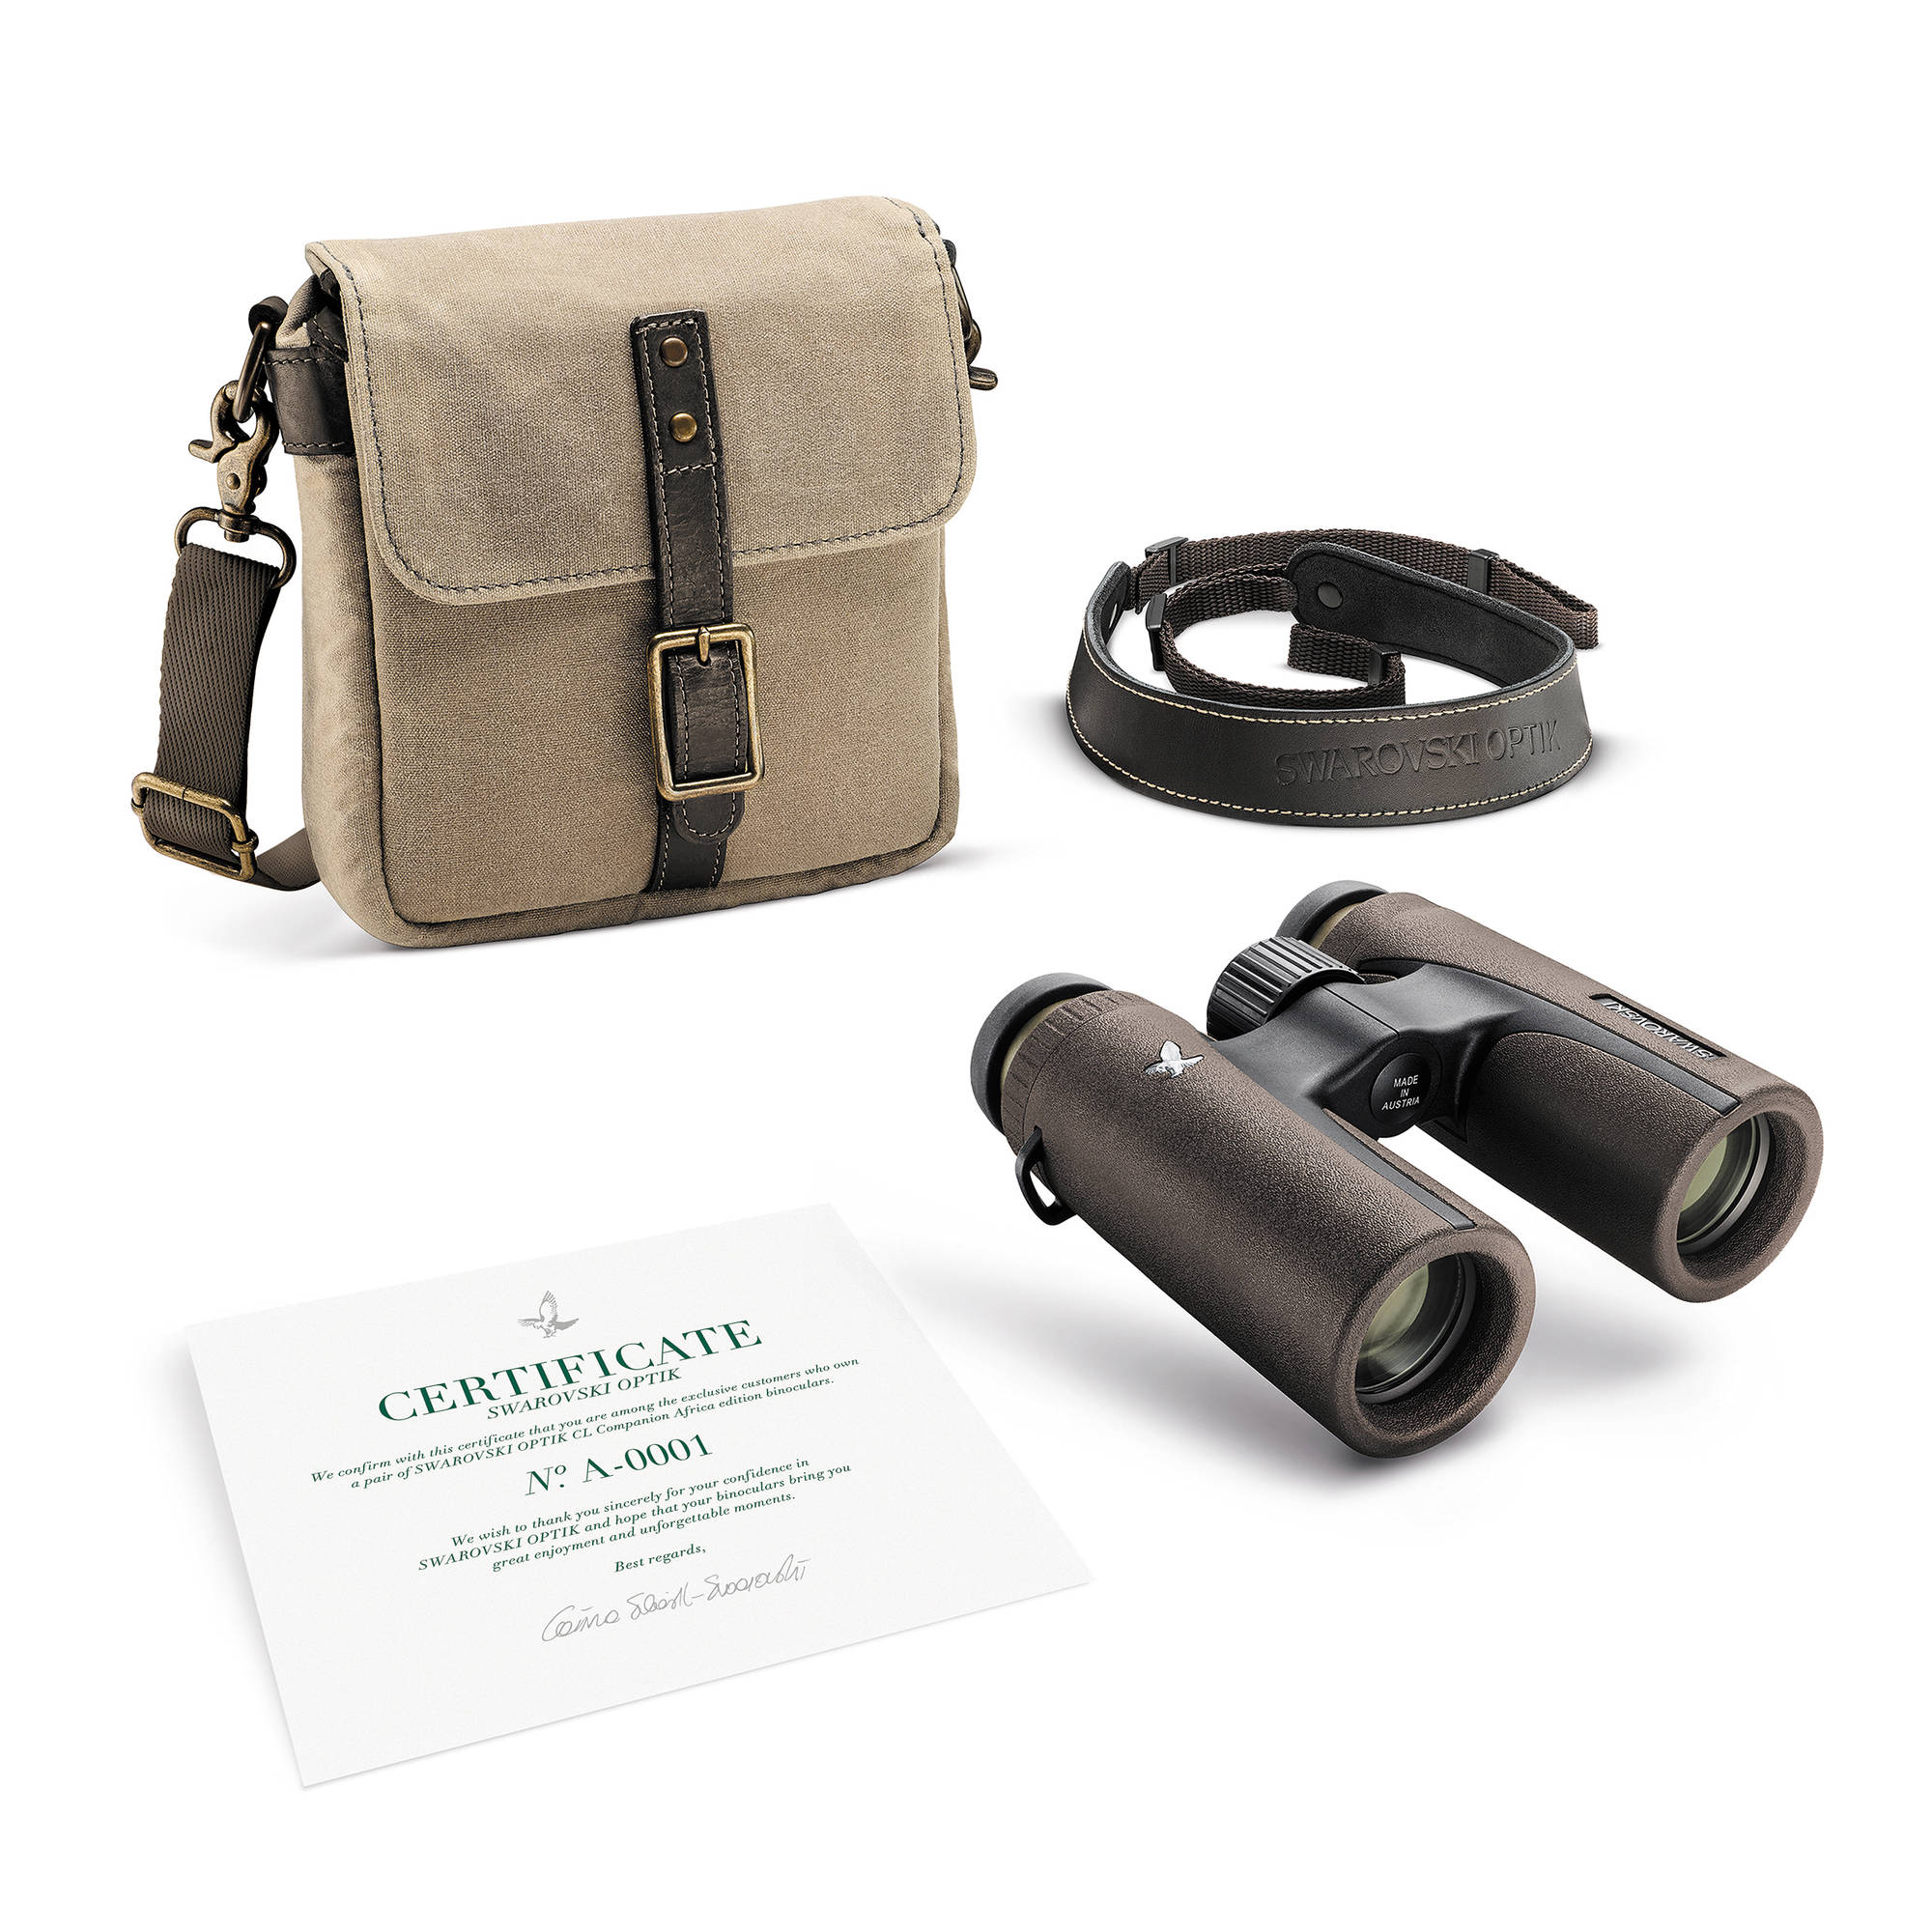 swarovski cl companion binoculars